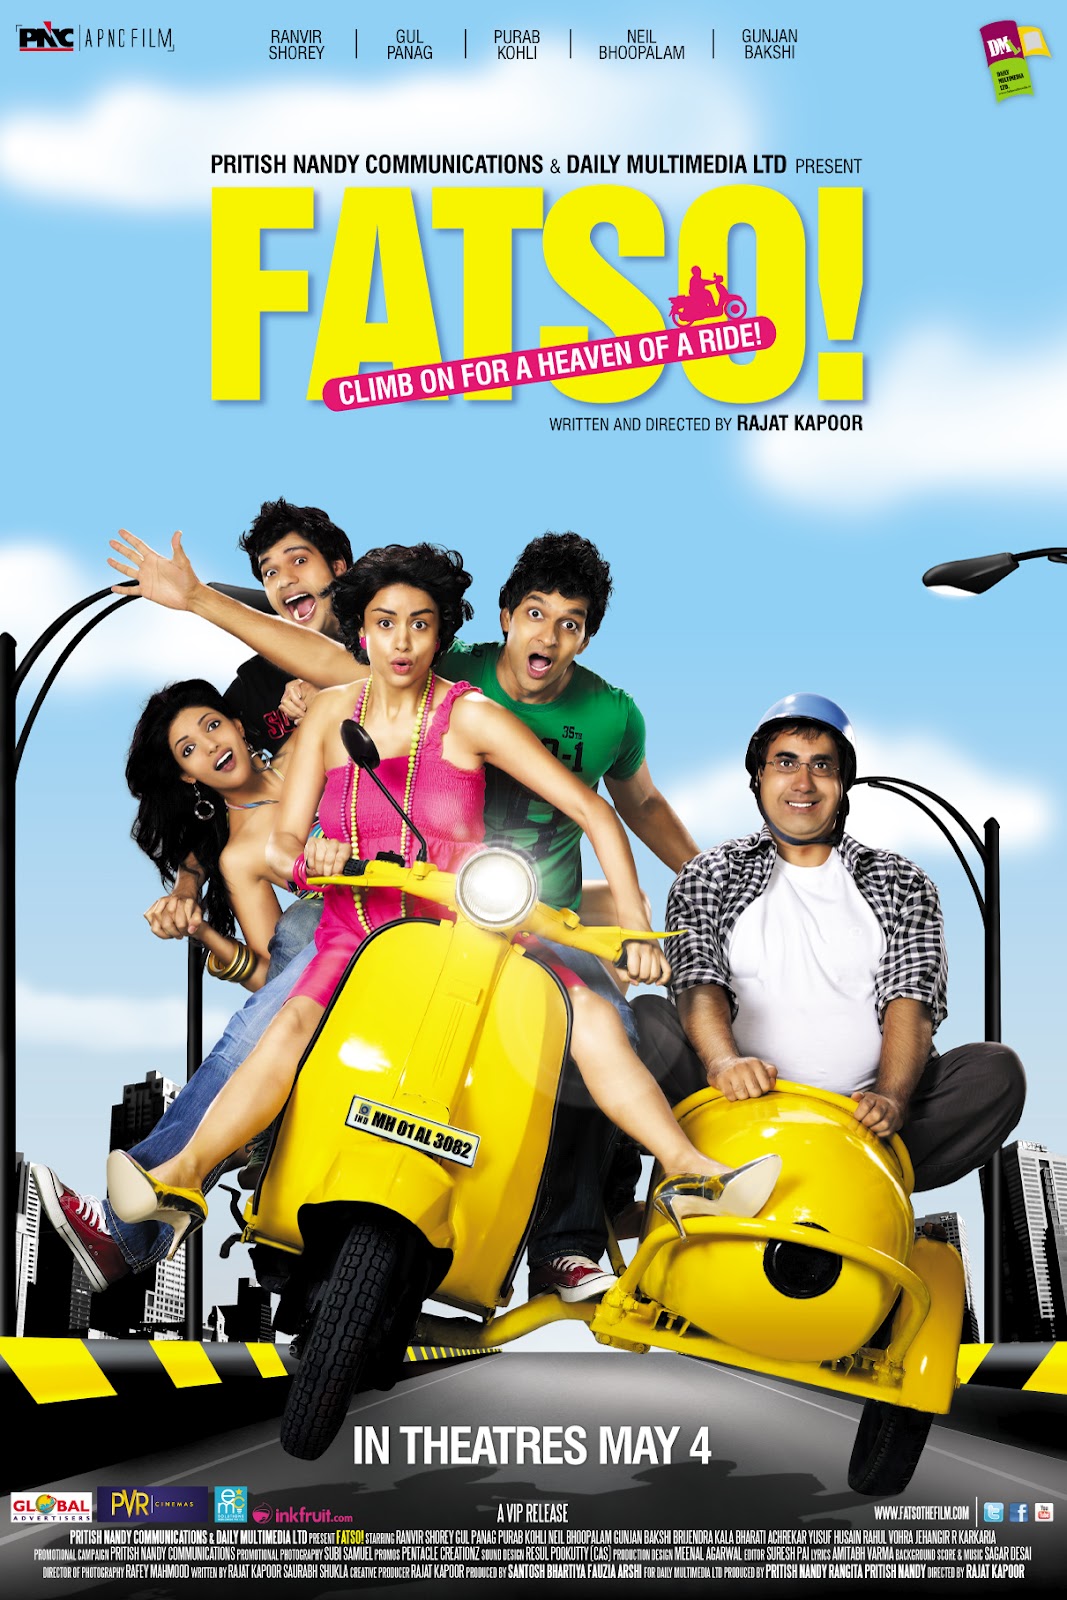 Ranvir Shorey در صحنه فیلم سینمایی Fatso! به همراه Gul Panag، Neil Bhoopalam، Purab Kohli و Bharati Achrekar